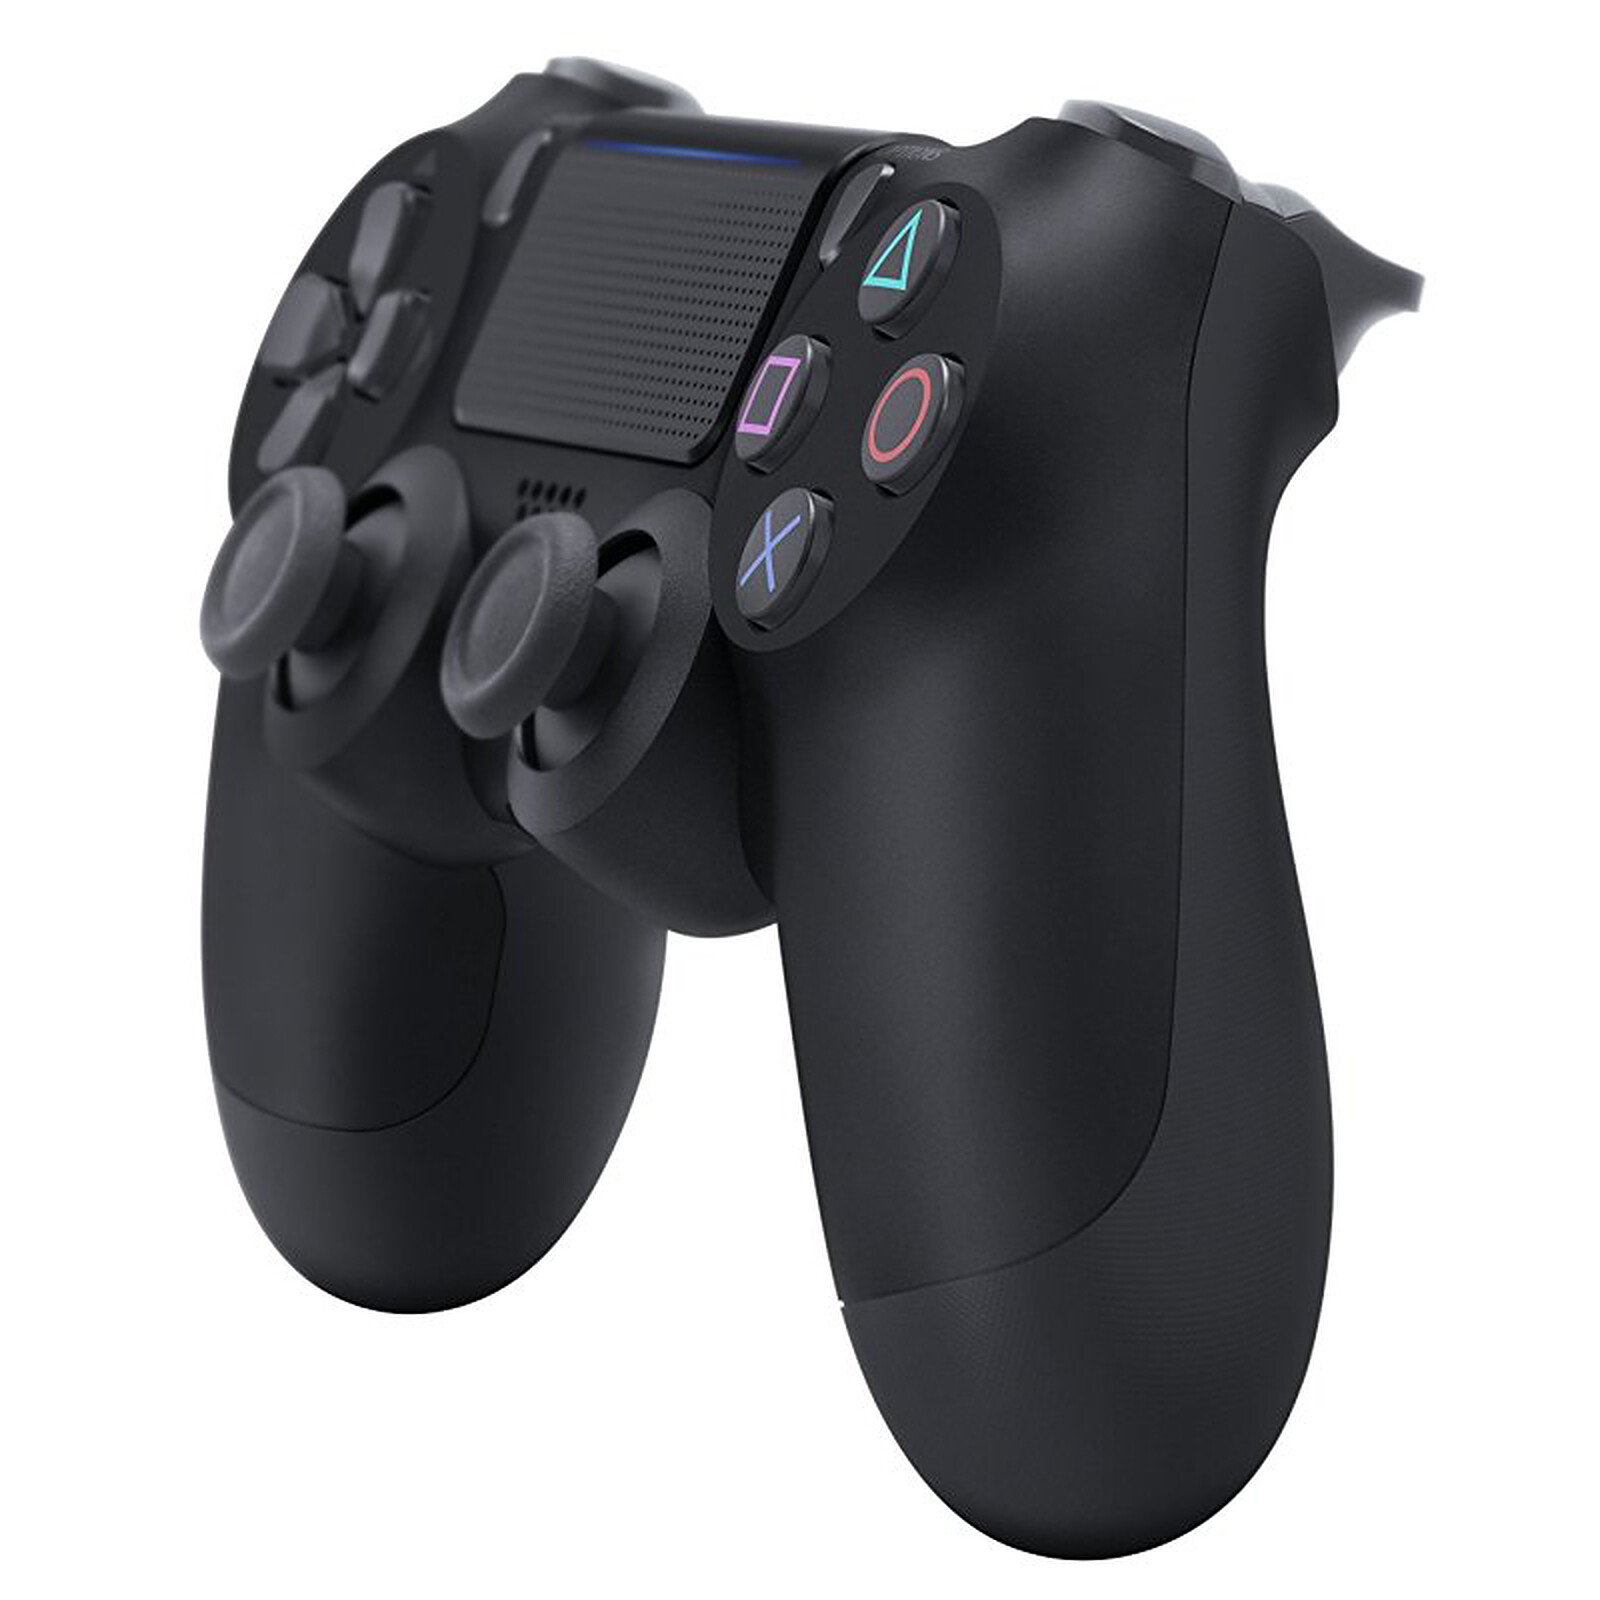 envase Confirmación empieza la acción Sony DualShock 4 v2 (negro) - Accesorios PS4 Sony Interactive Entertainment  en LDLC | ¡Musericordia!